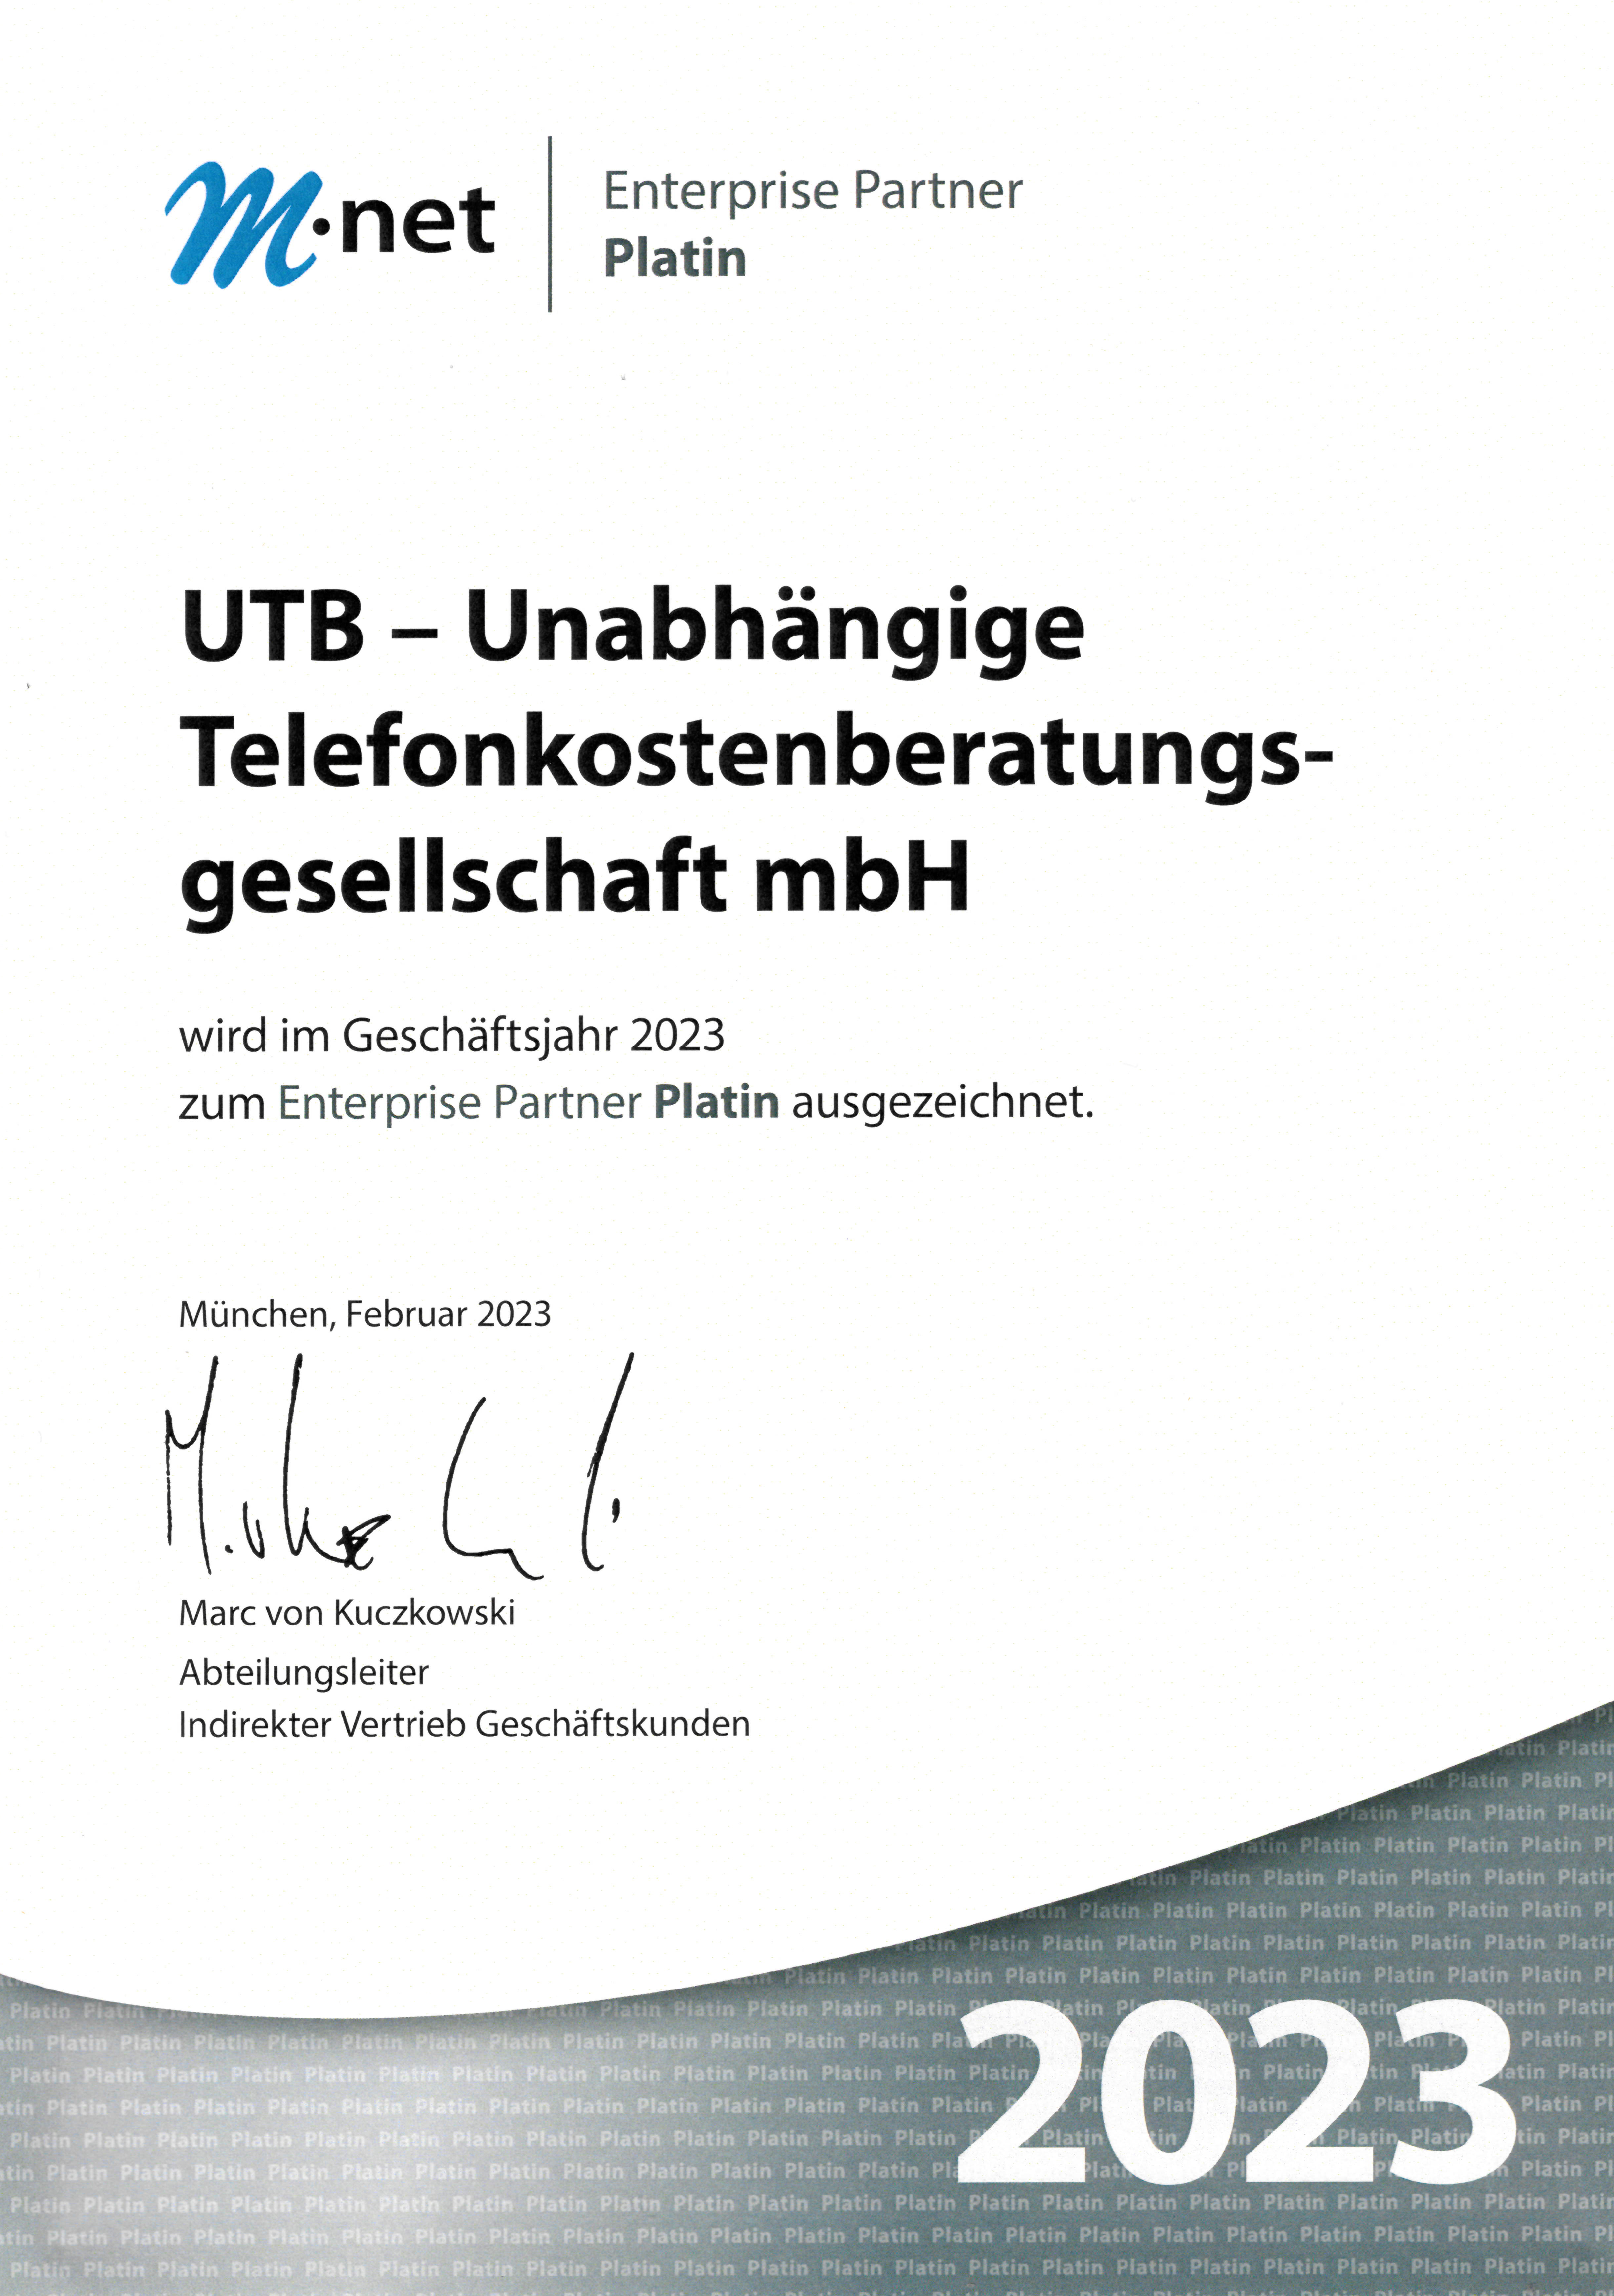 Mnet Enterprise Partner Platin 2023 für die UTB GmbH